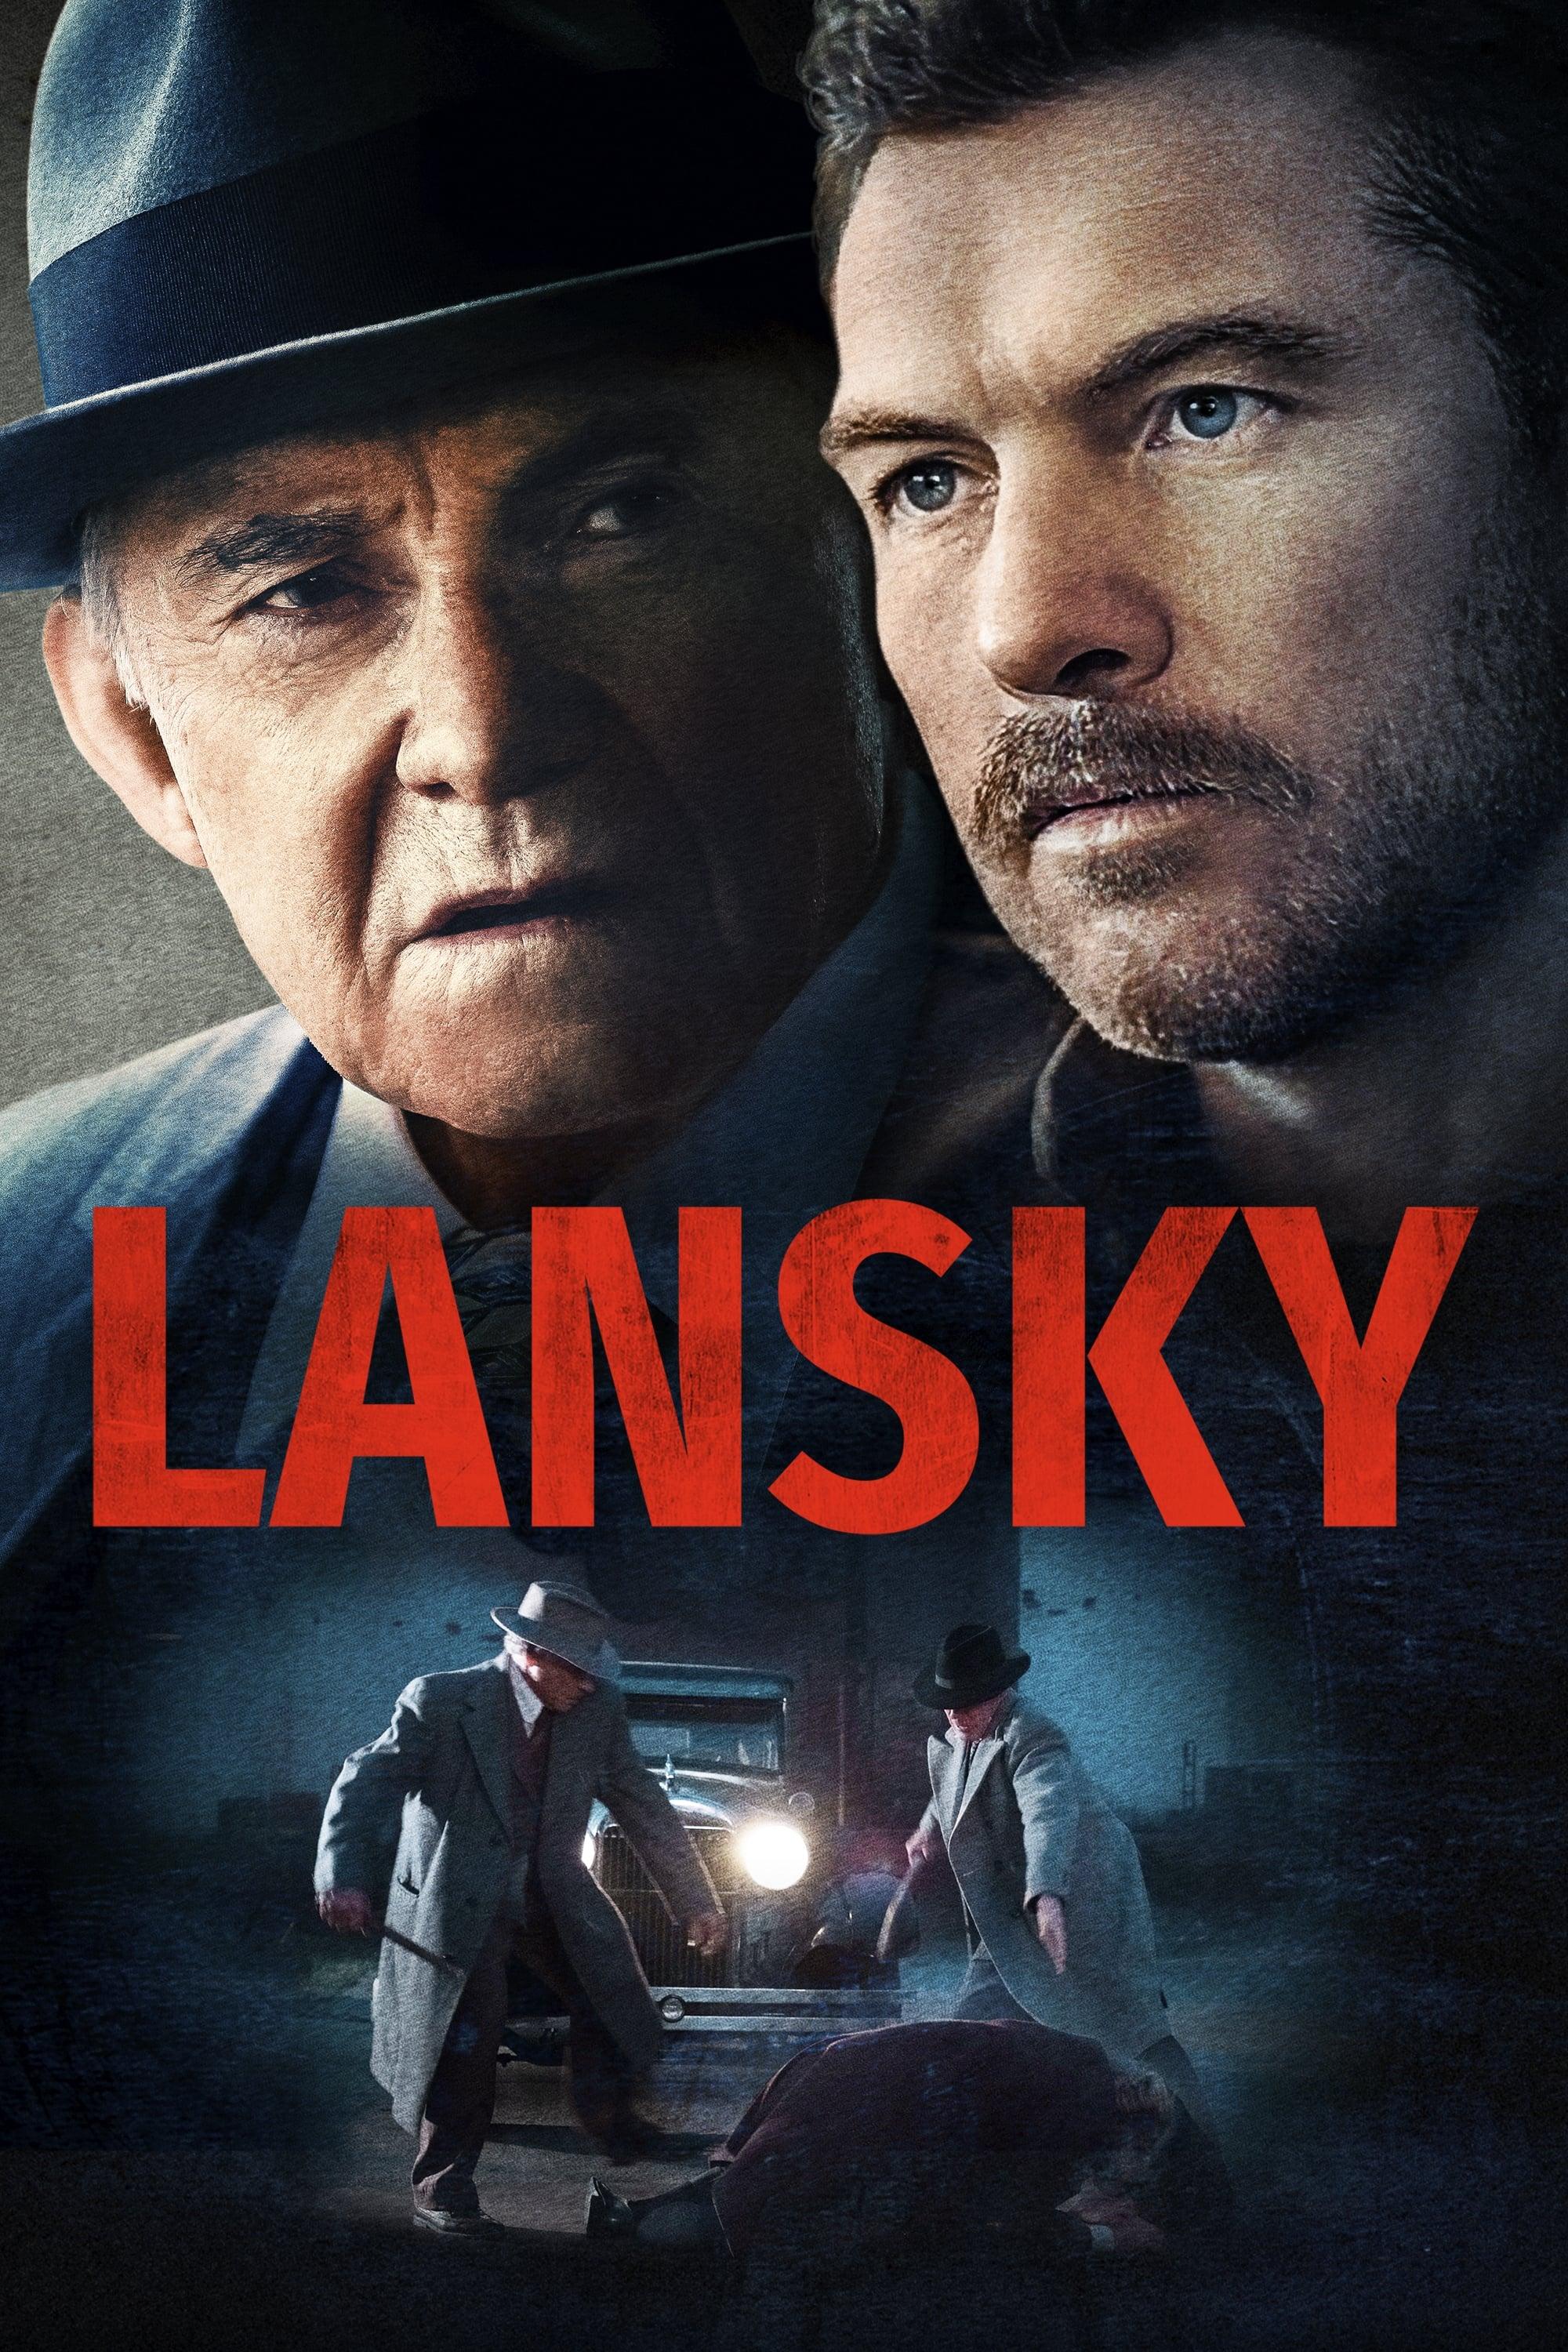 Lansky poster